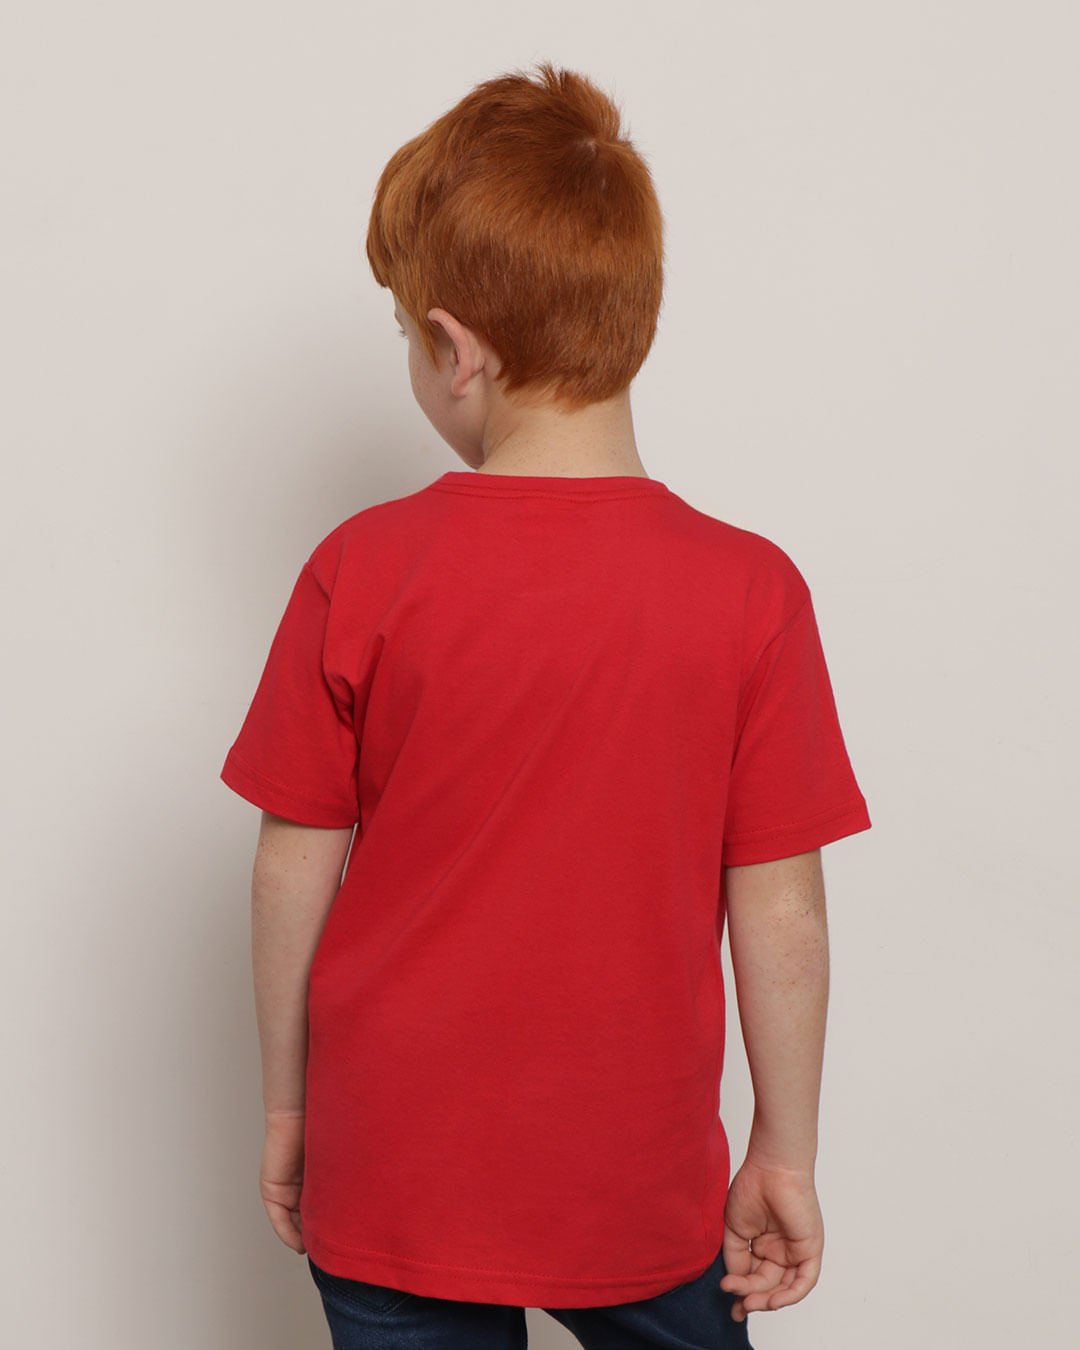 Camiseta-Infantil-Manga-Curta-Estampa-Os-Vingadores-Marvel-Vermelha